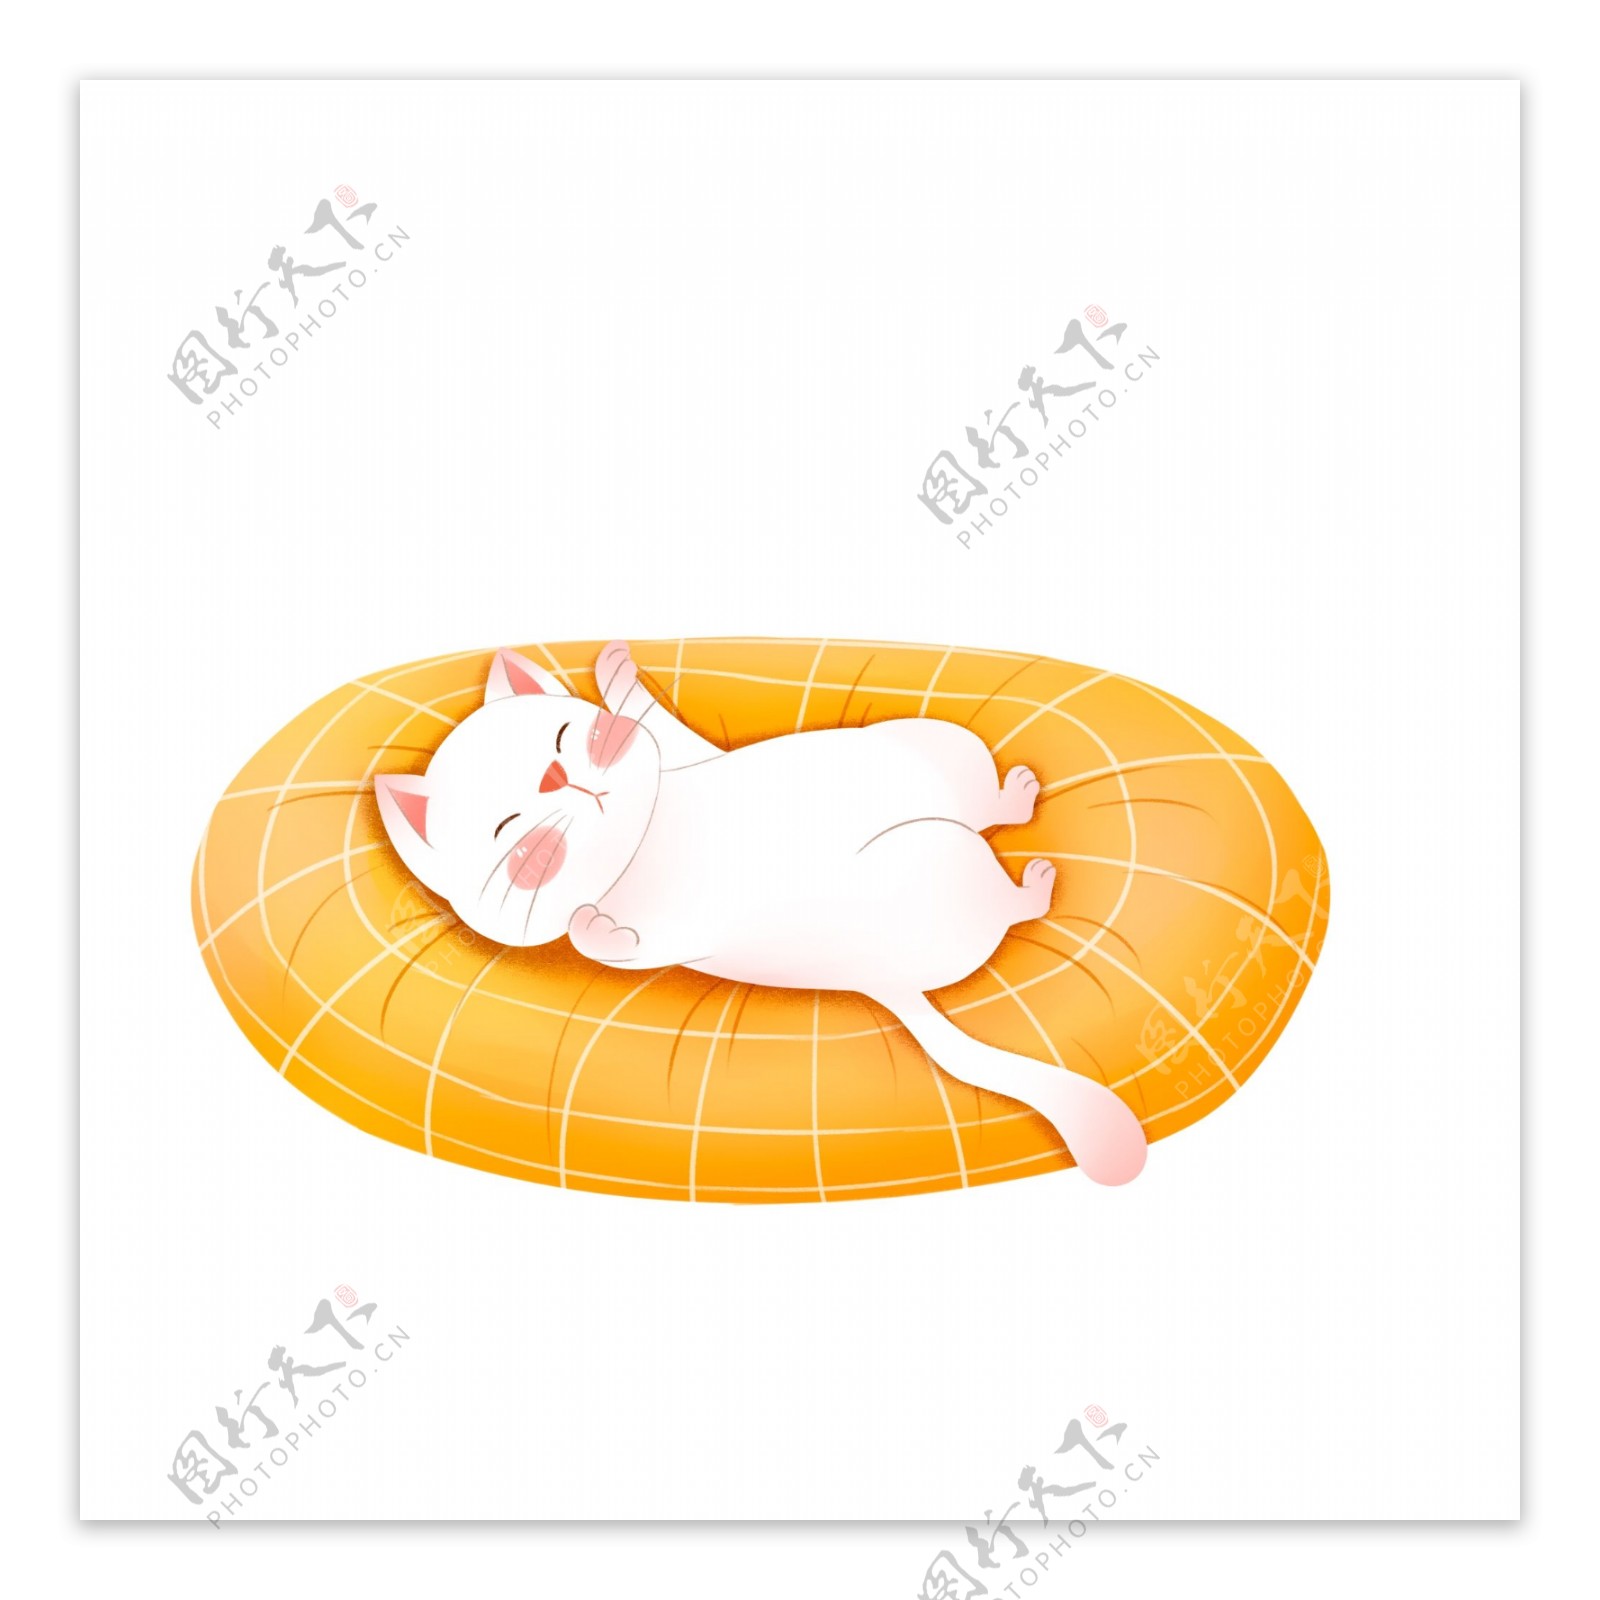 躺在垫子上的猫咪图案